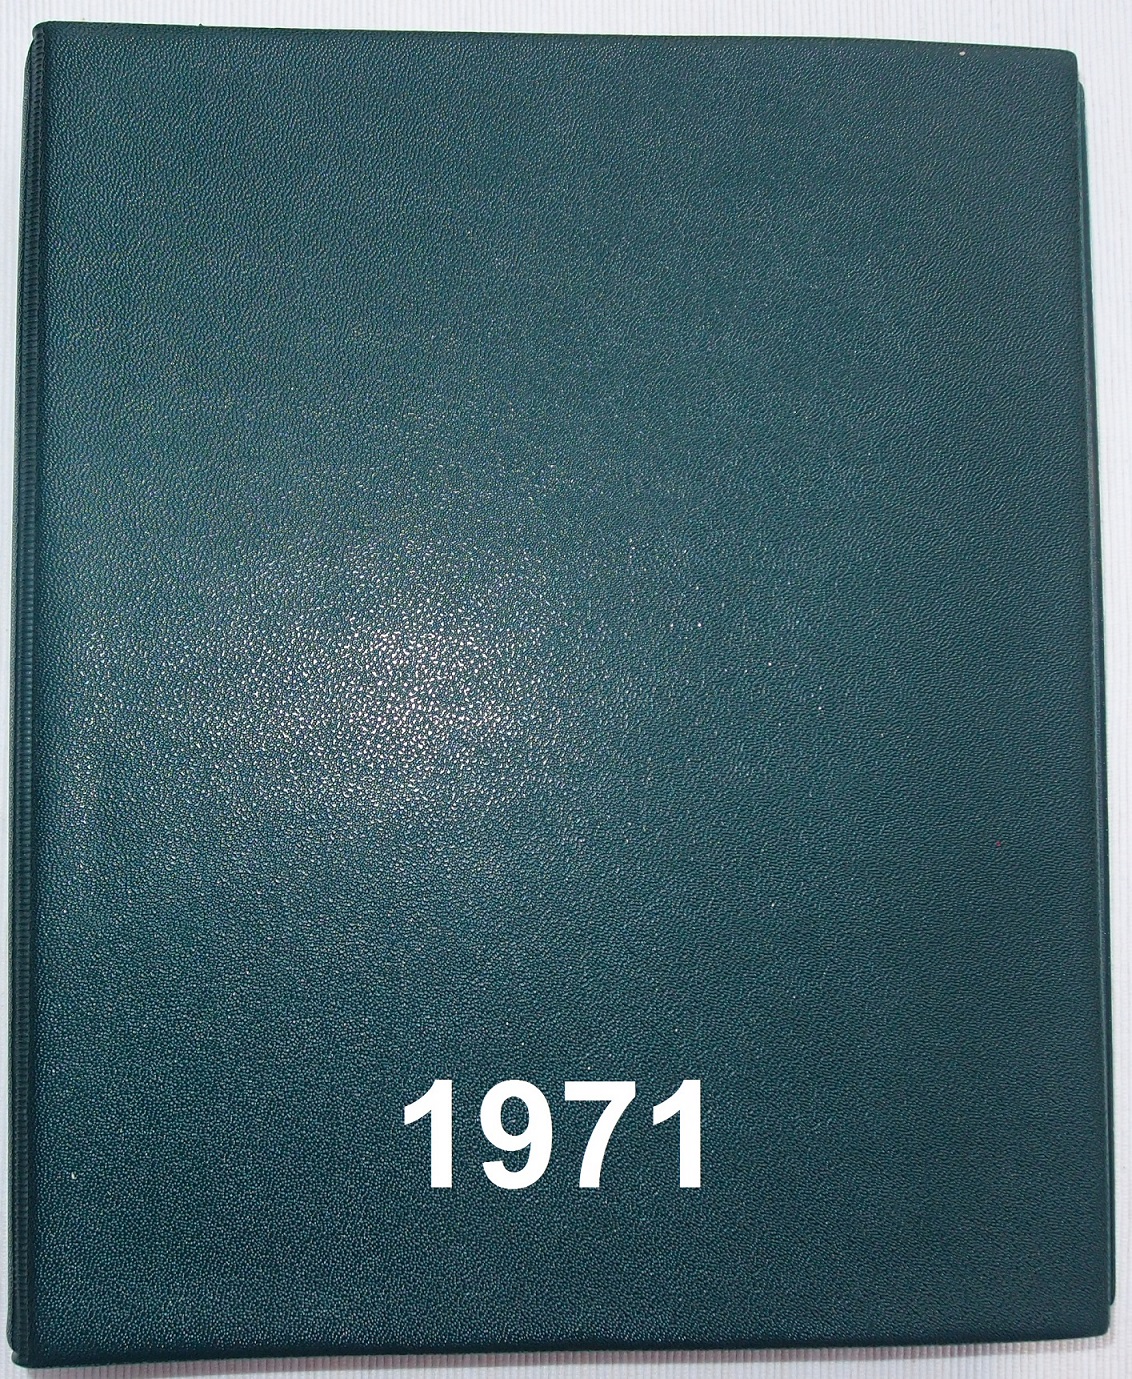 2018 08 10 Faberbuch 1971 B1